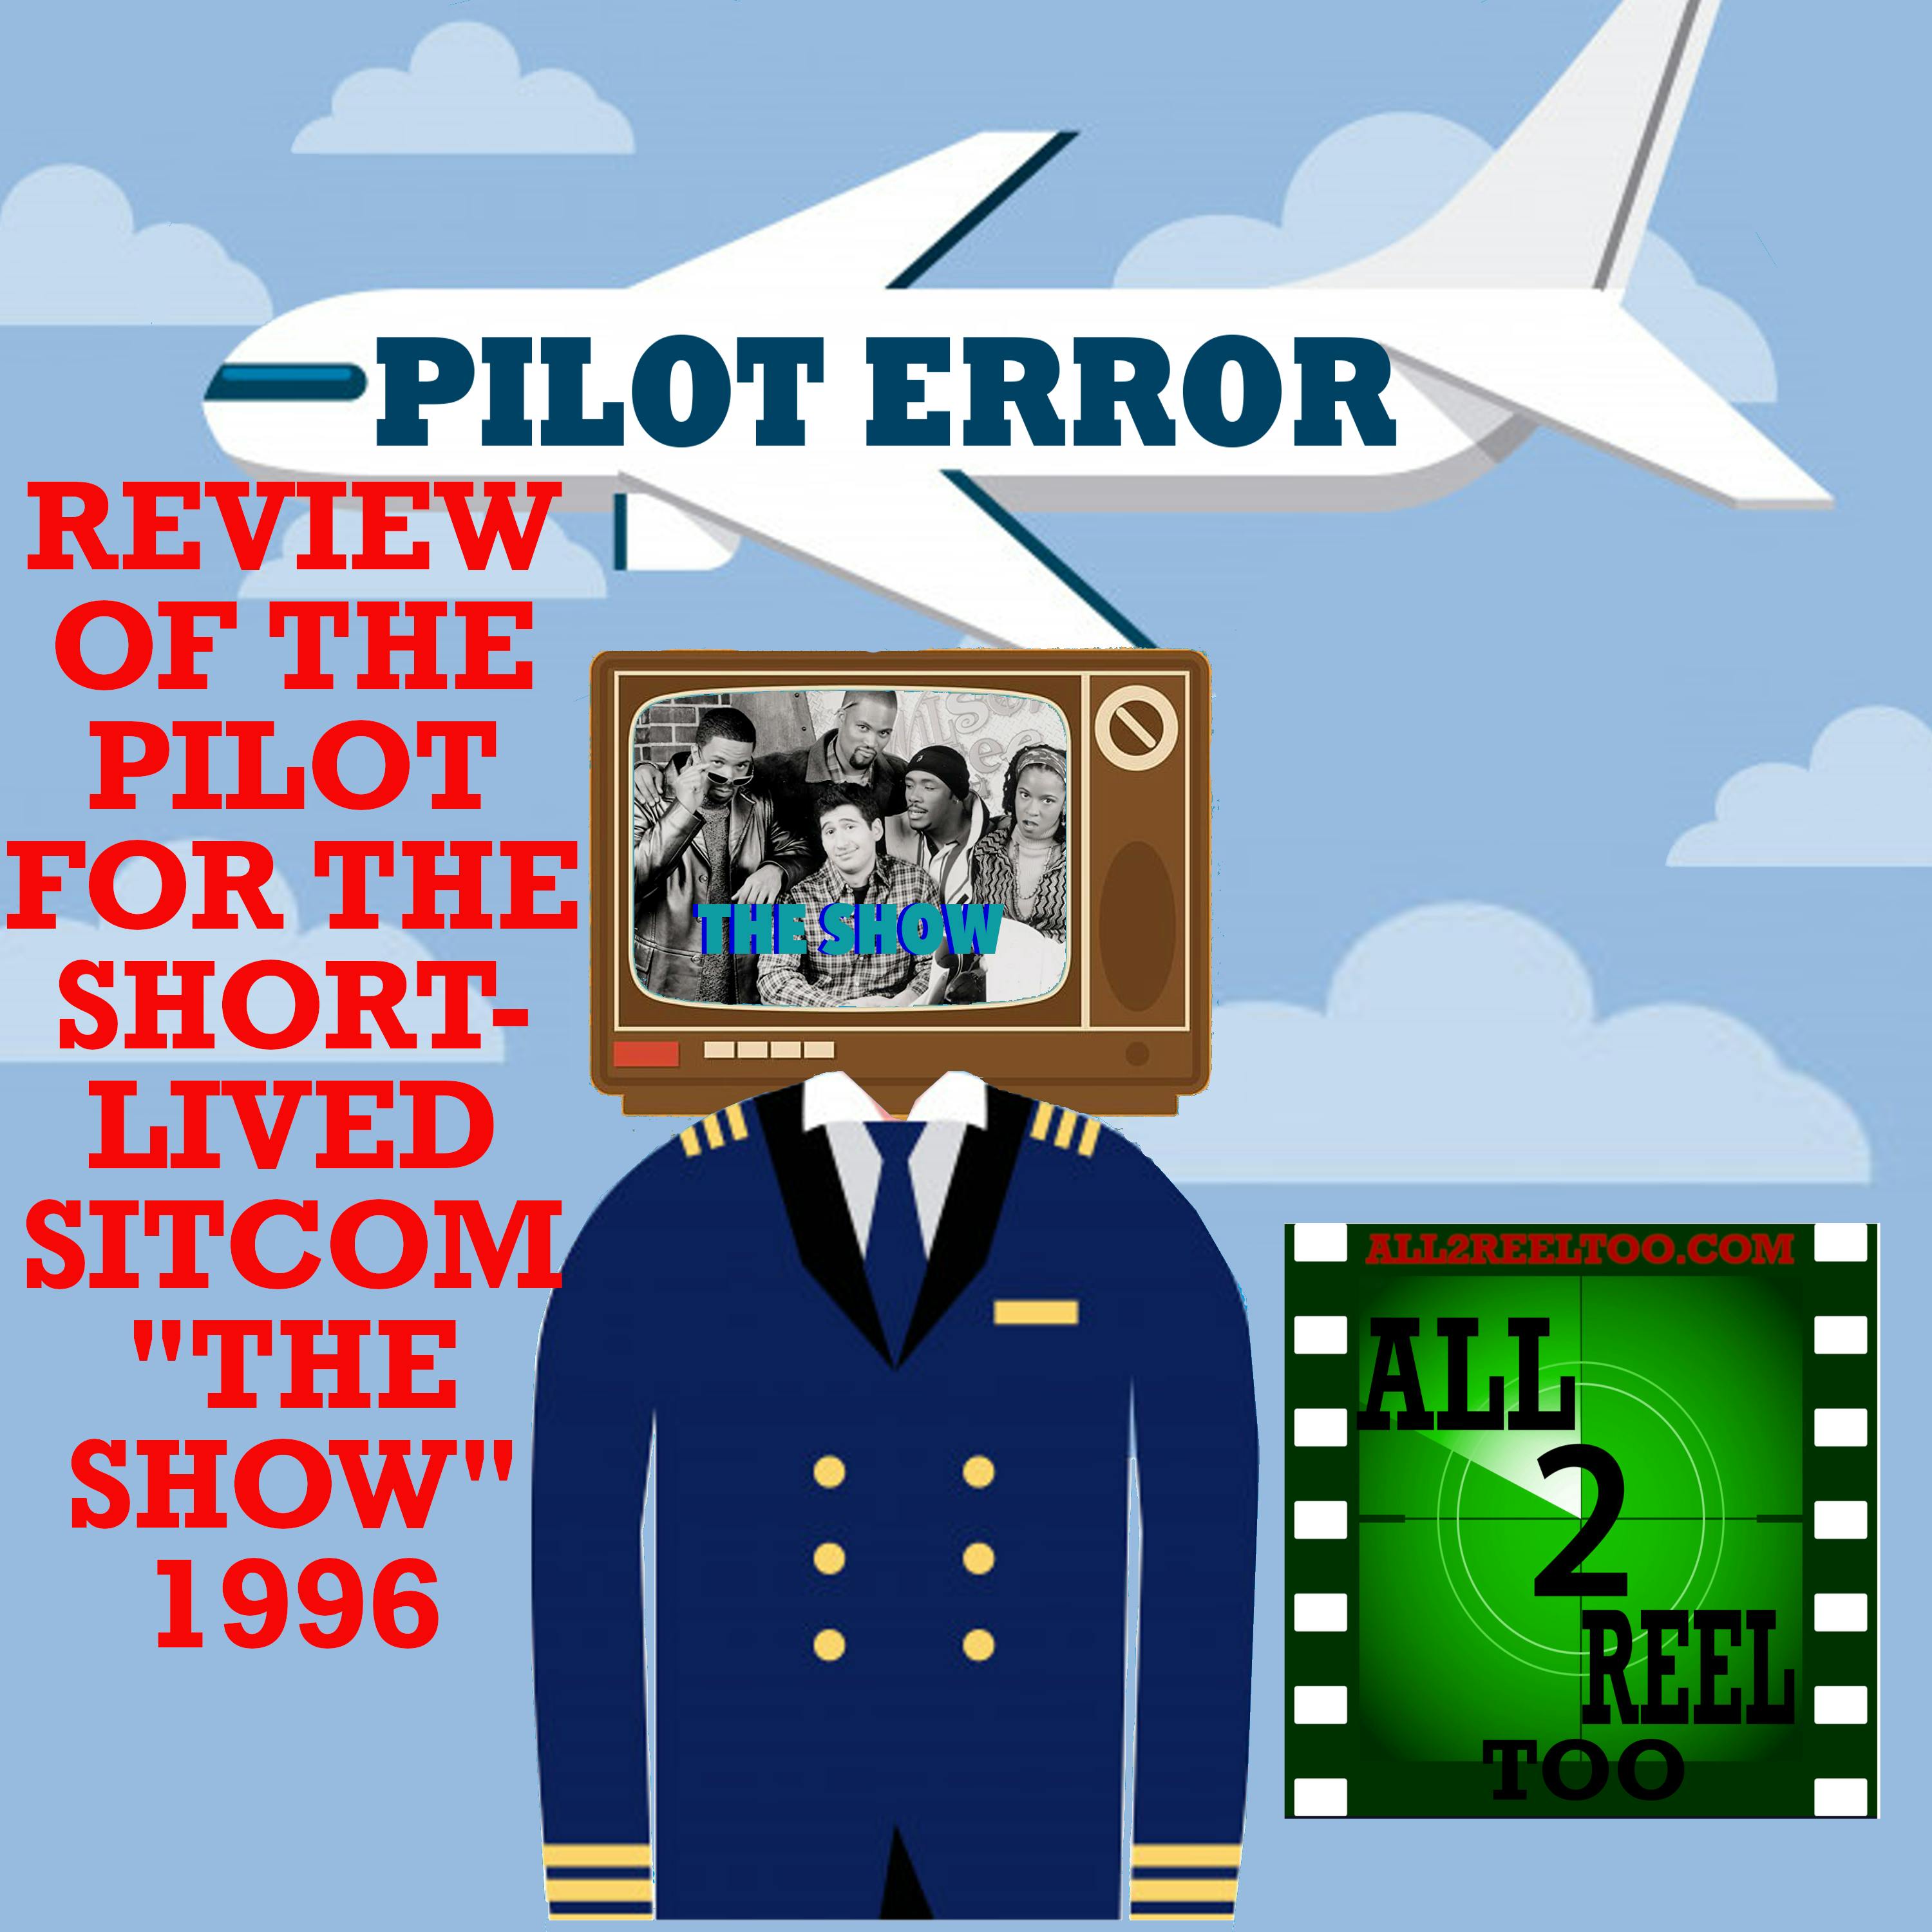 THE SHOW (1996) - PILOT ERROR REVIEW